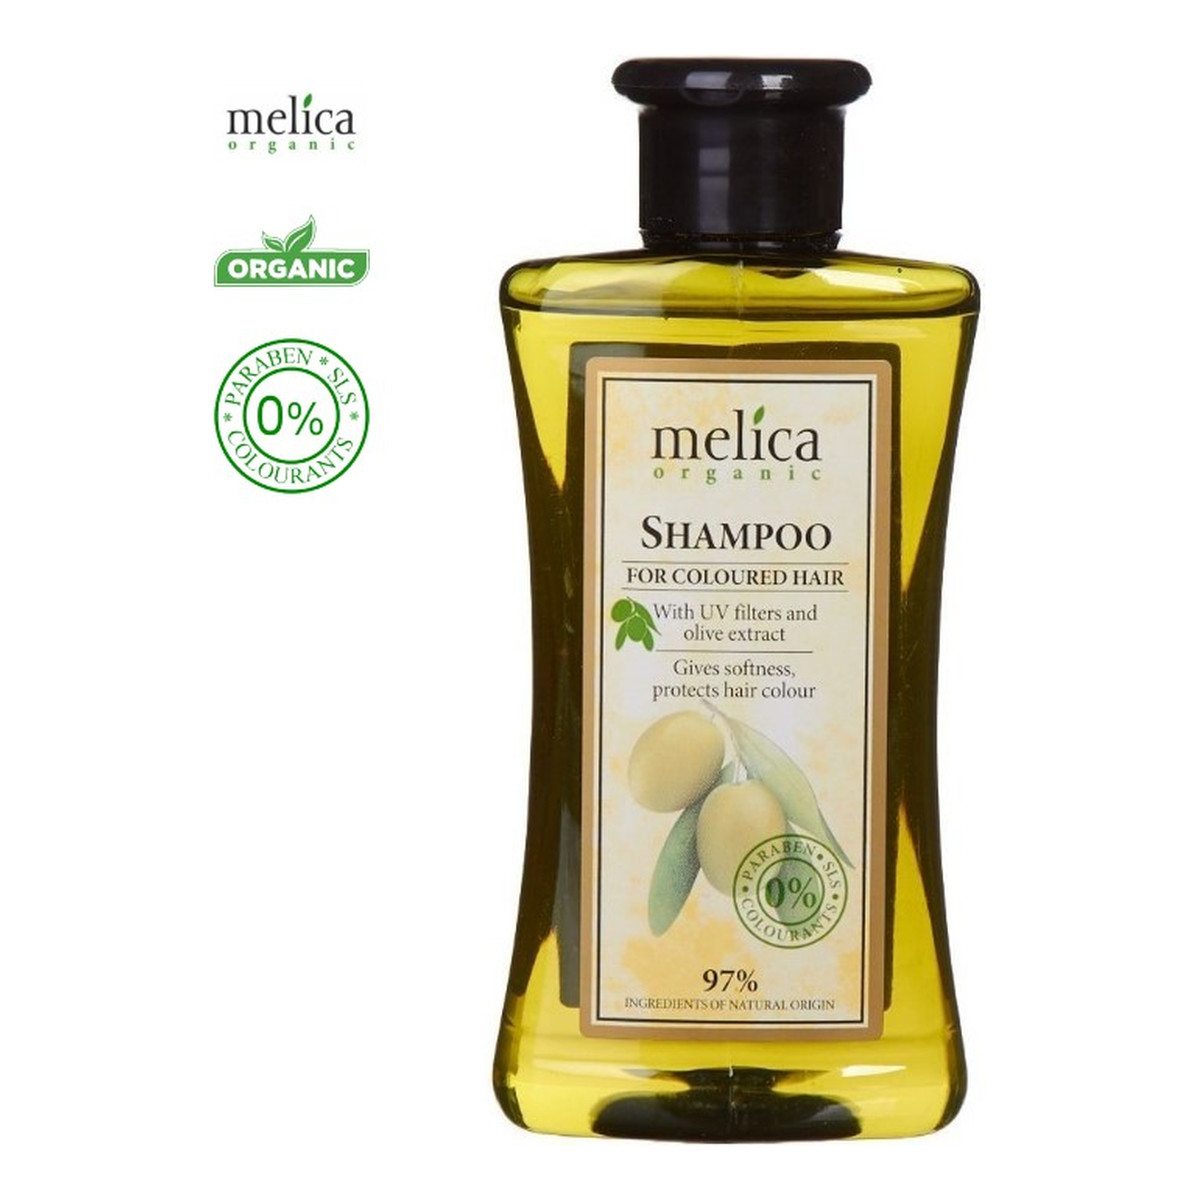 Melica Organic Szampon organiczny do włosów farbowanych z filtrami UV i ekstraktem z oliwek 300ml